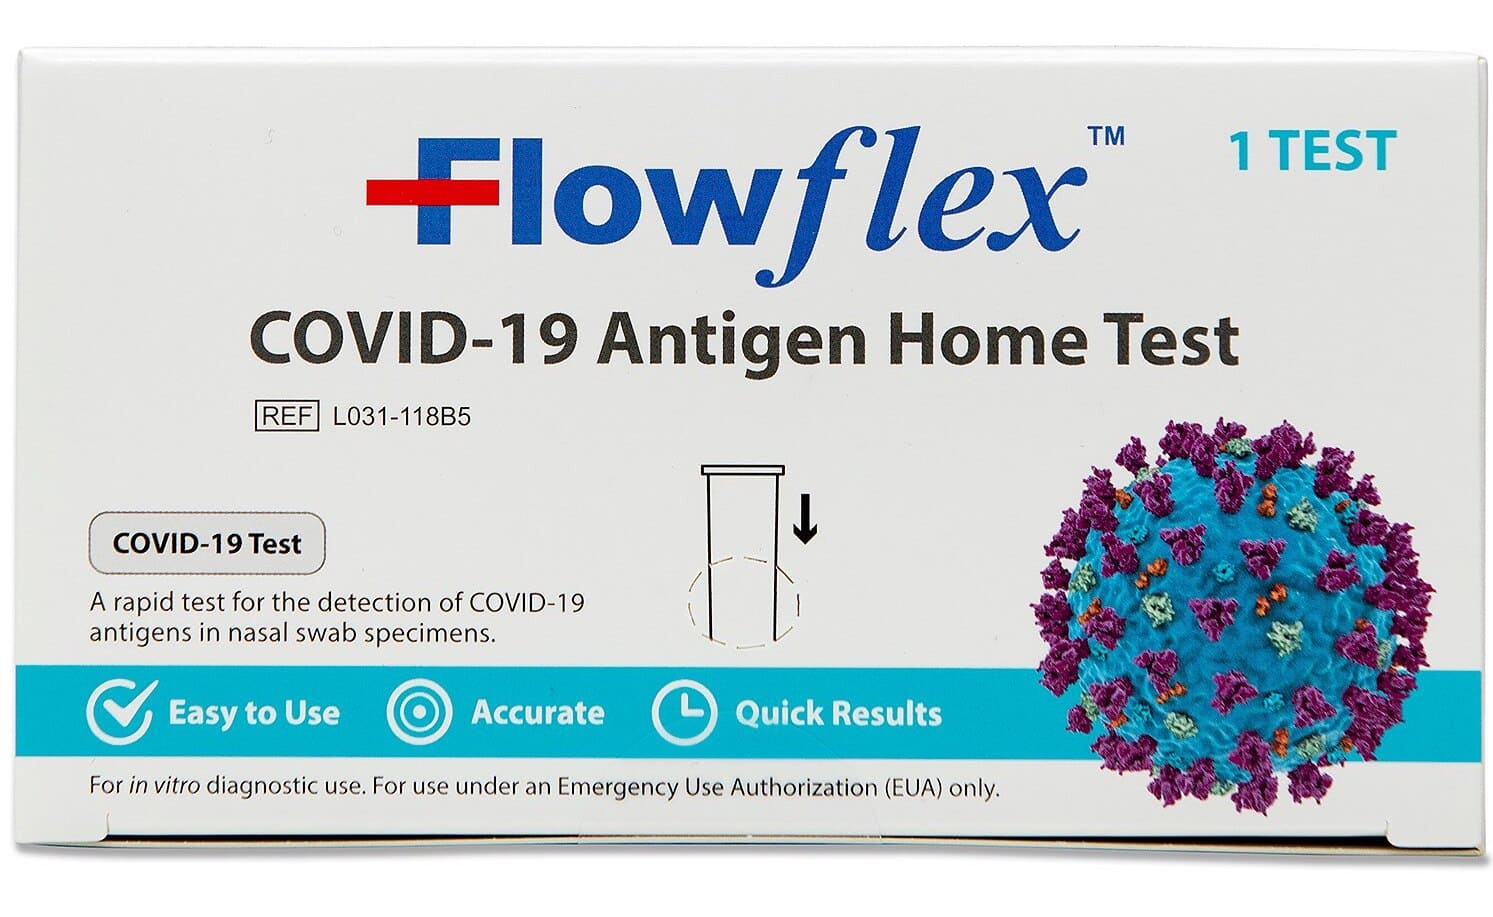 Flowflex Prueba Casera de Antígeno del COVID-19 1 test 1